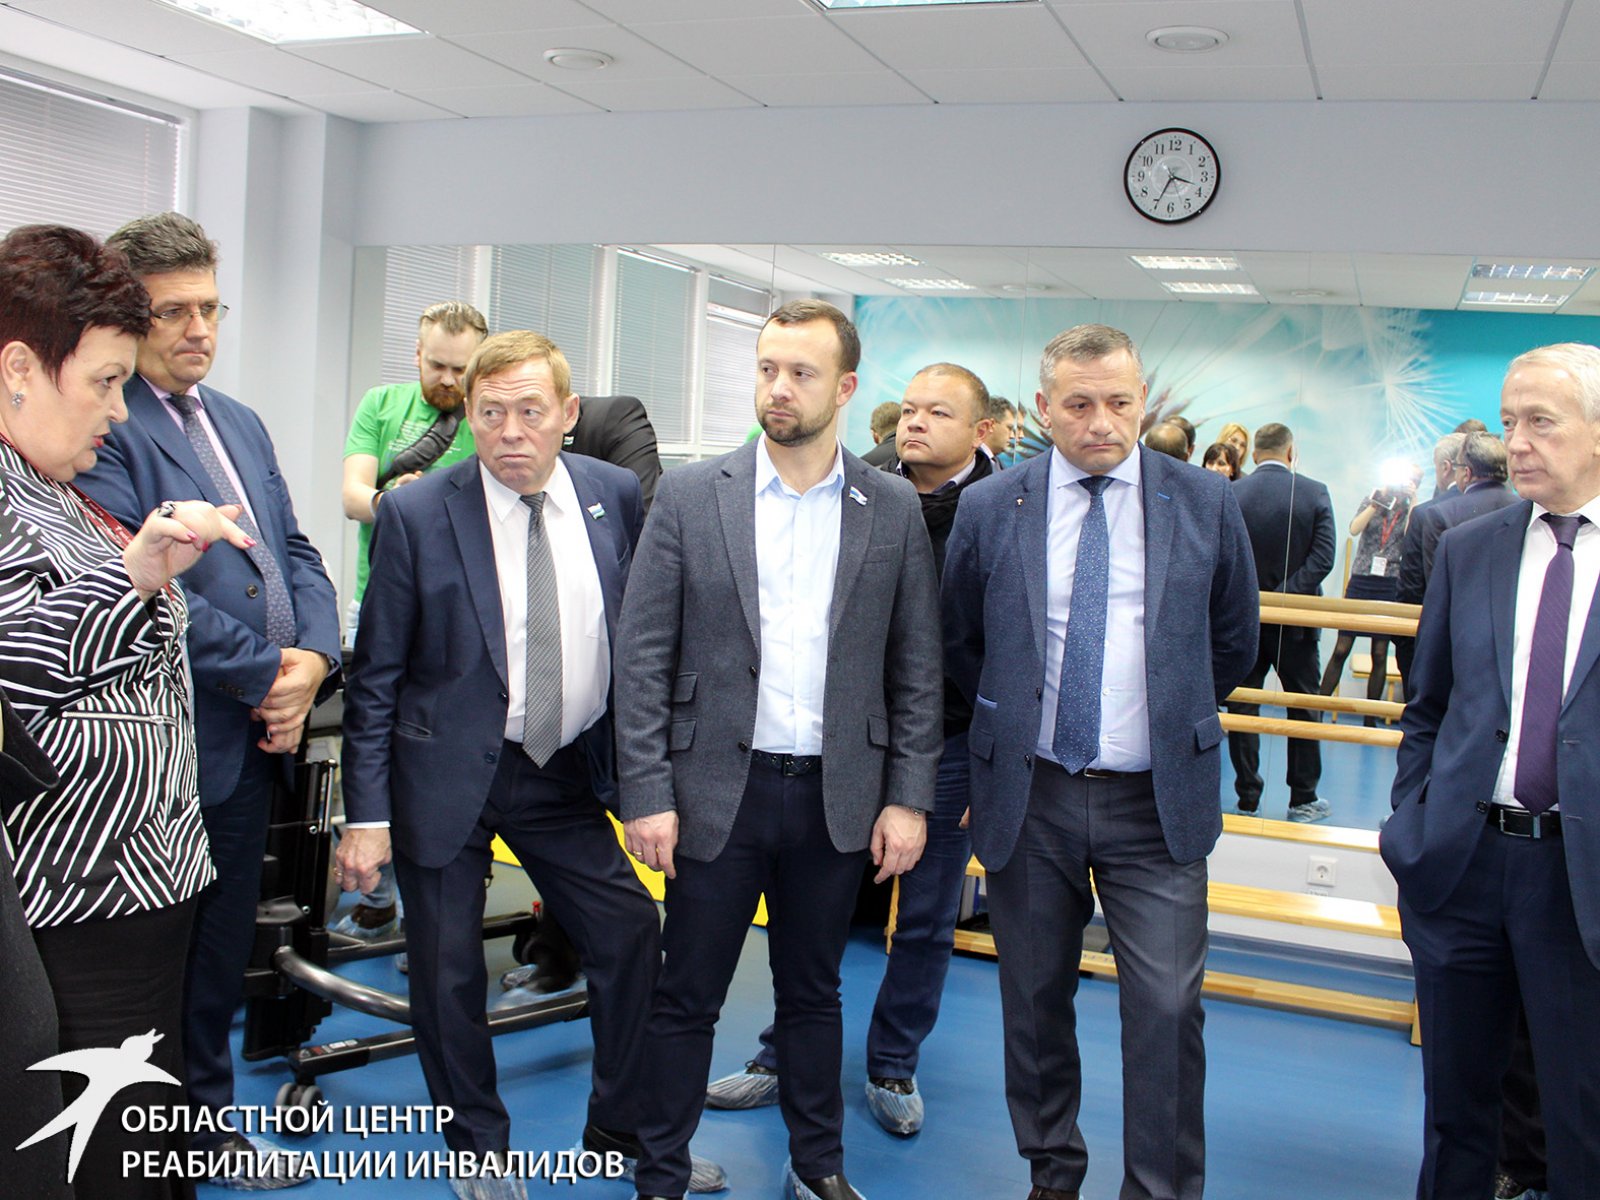 Депутаты Заксобрания посетили Областной центр реабилитации инвалидов